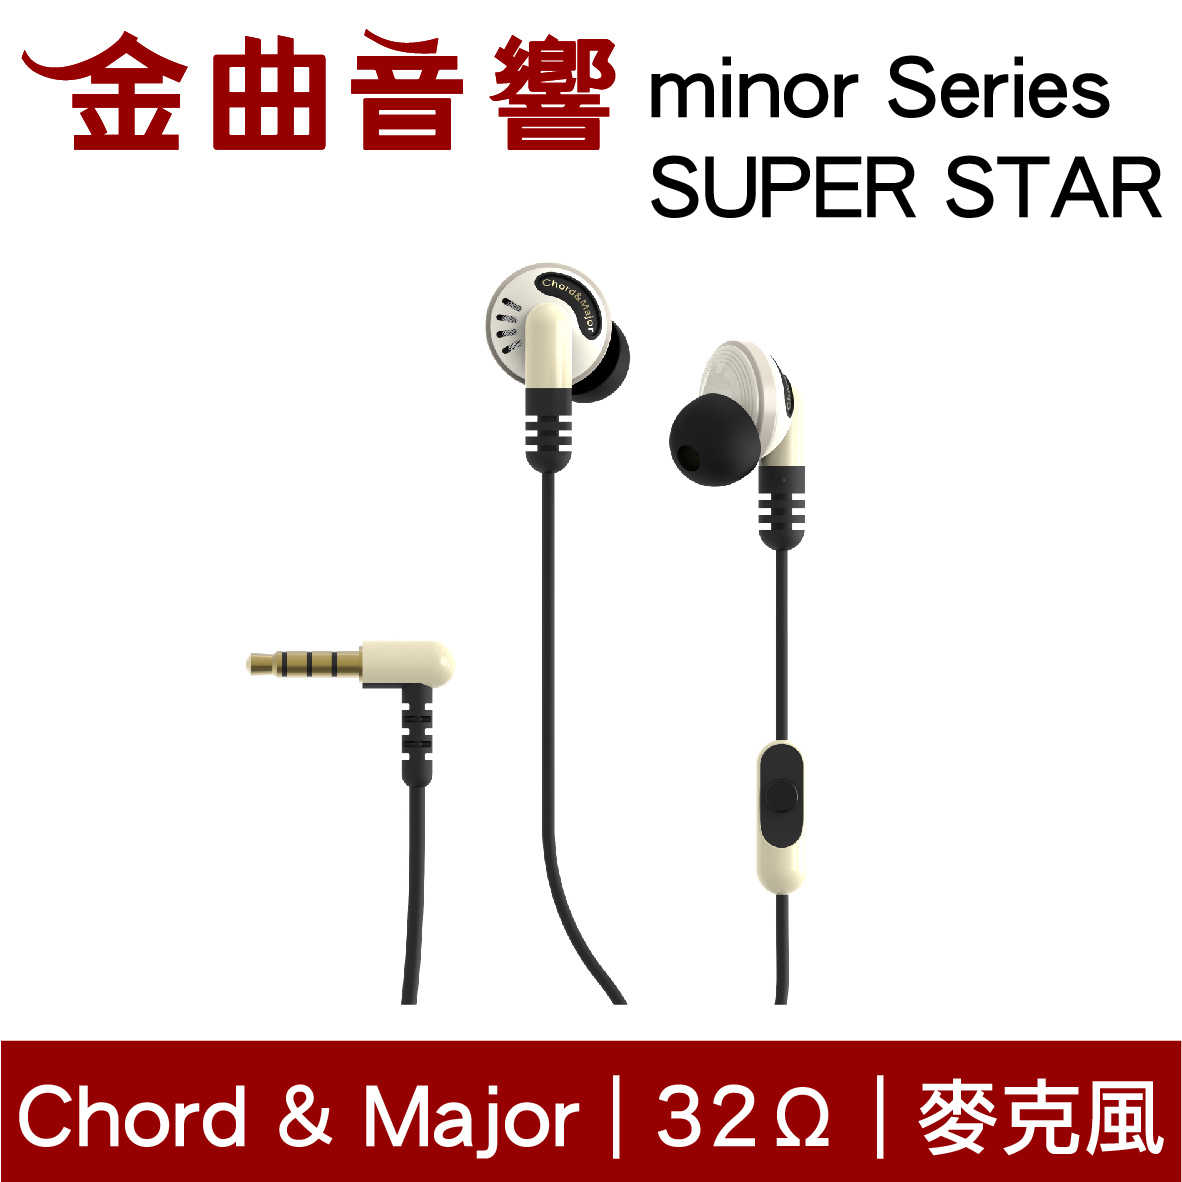 Chord & Major 小調性耳機 minor series 超級巨星 通話 耳道式 耳機 | 金曲音響